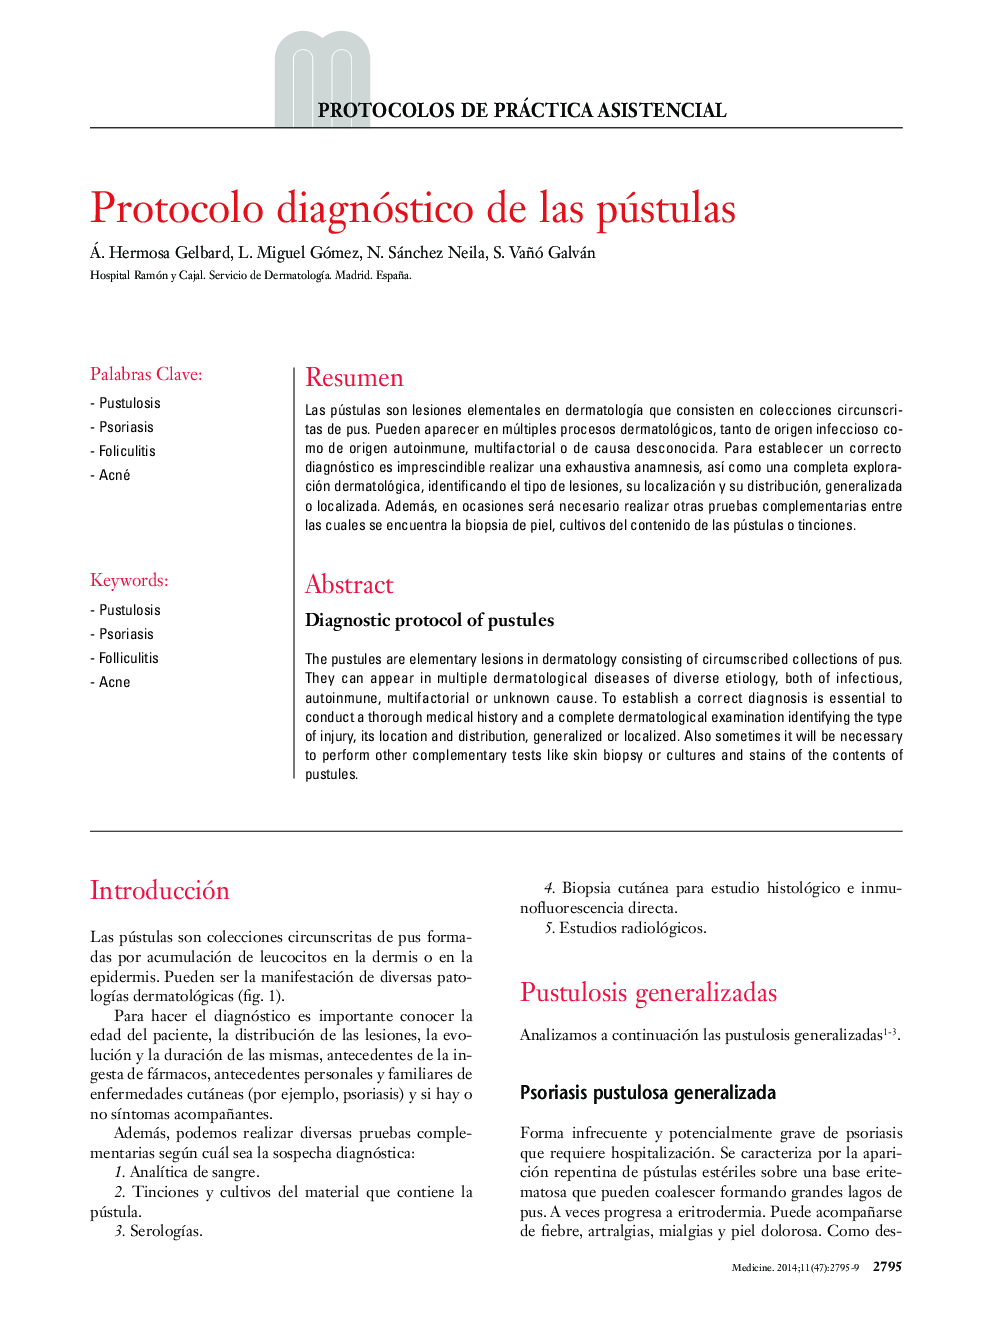 Protocolo diagnóstico de las pústulas